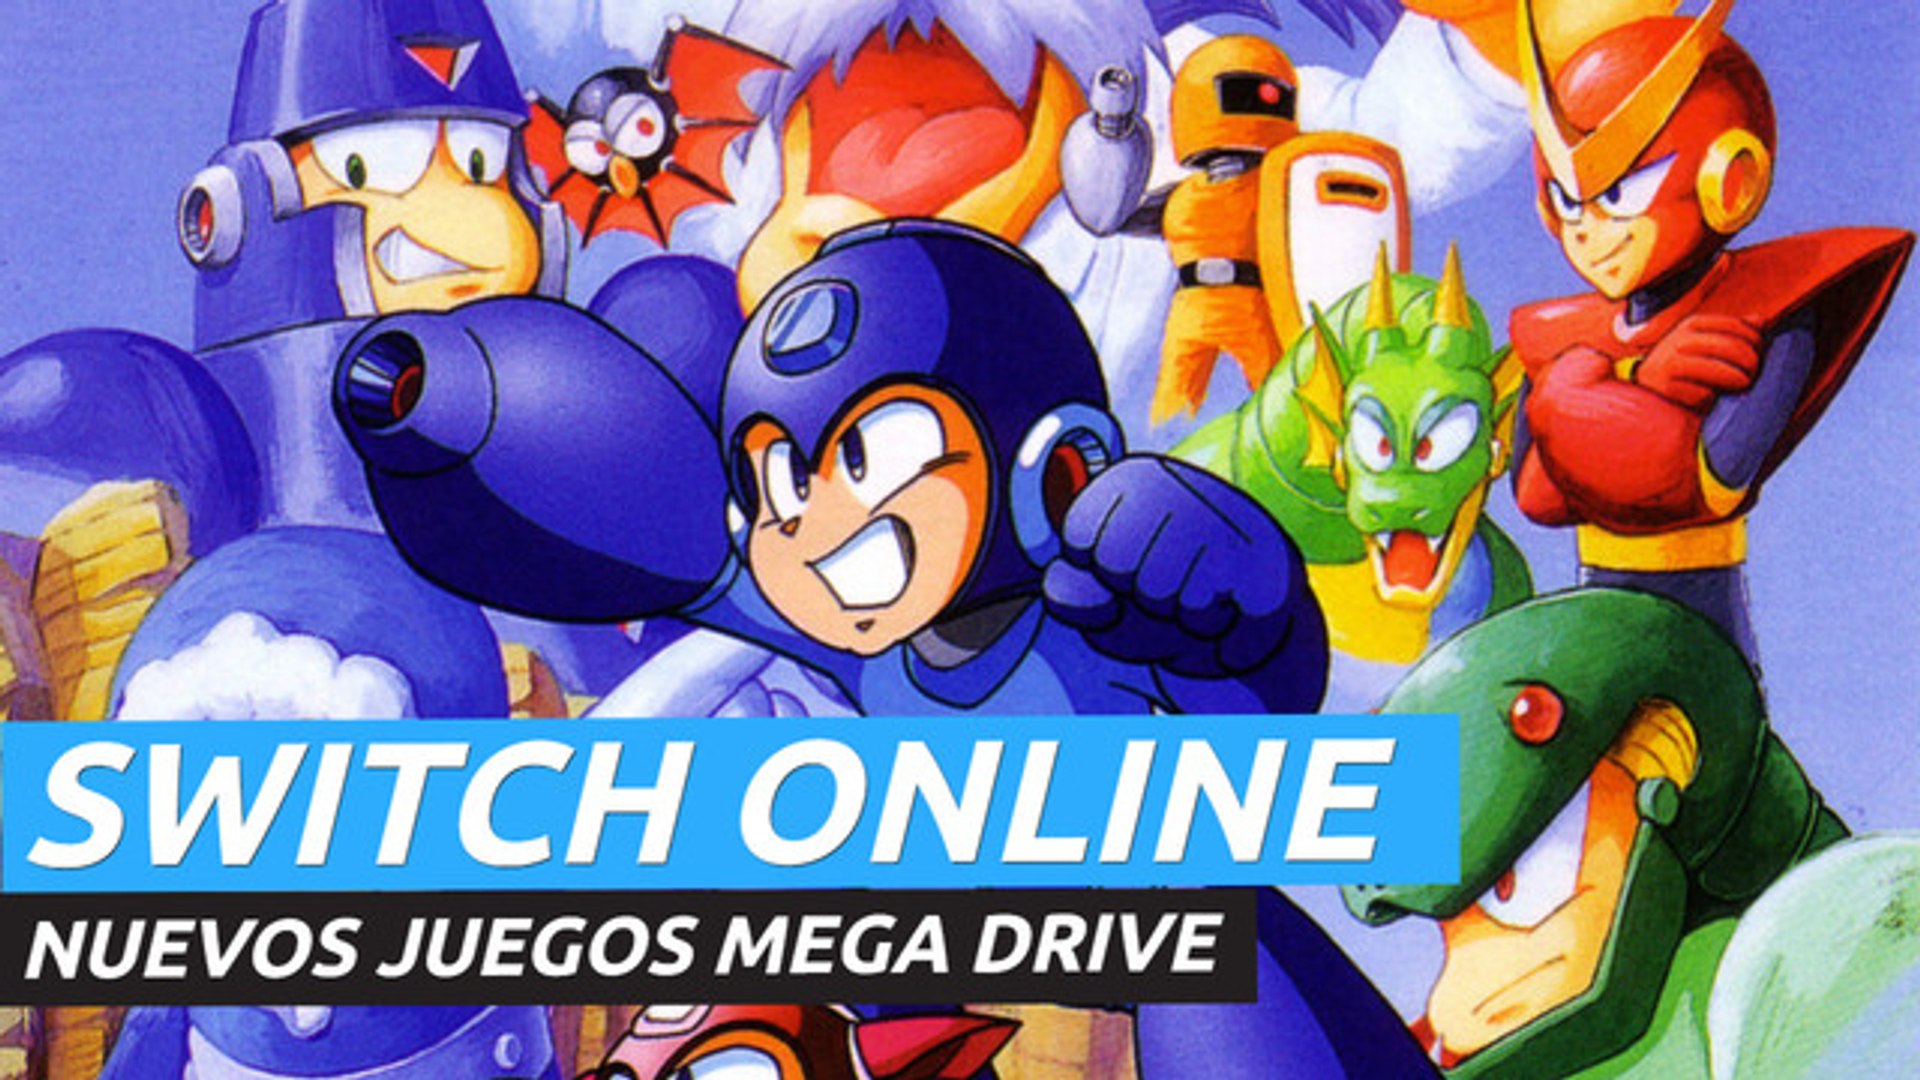 Nintendo Switch Online - Nuevos juegos de Mega Drive - Vídeo Dailymotion